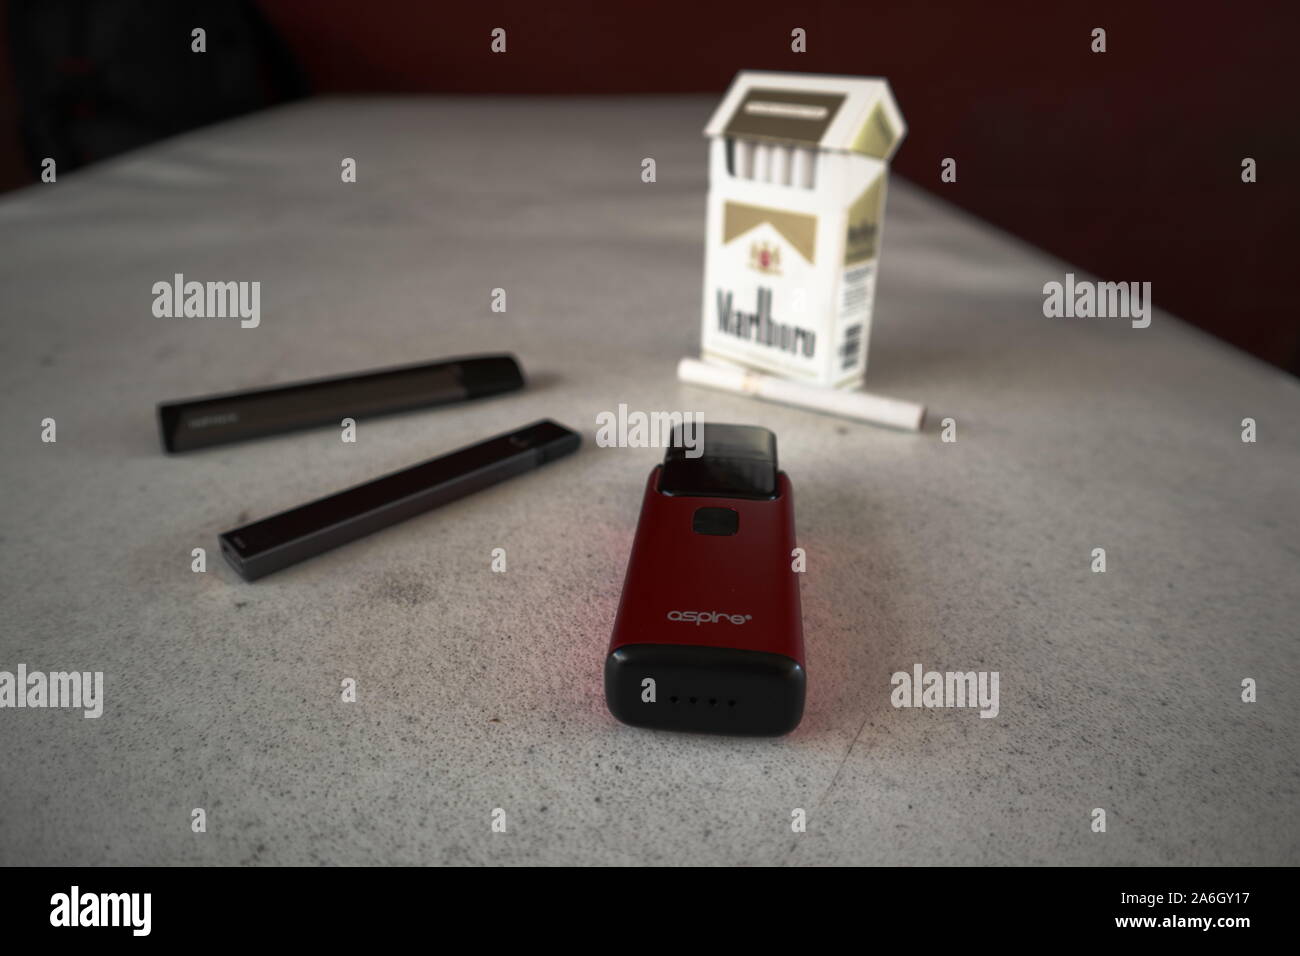 3 vapes juul, aspirano breeze, smok infinix con un pacchetto di sigarette Marlboro e una sigaretta collocato al di fuori su di un bianco tavola testurizzato, isolato Foto Stock